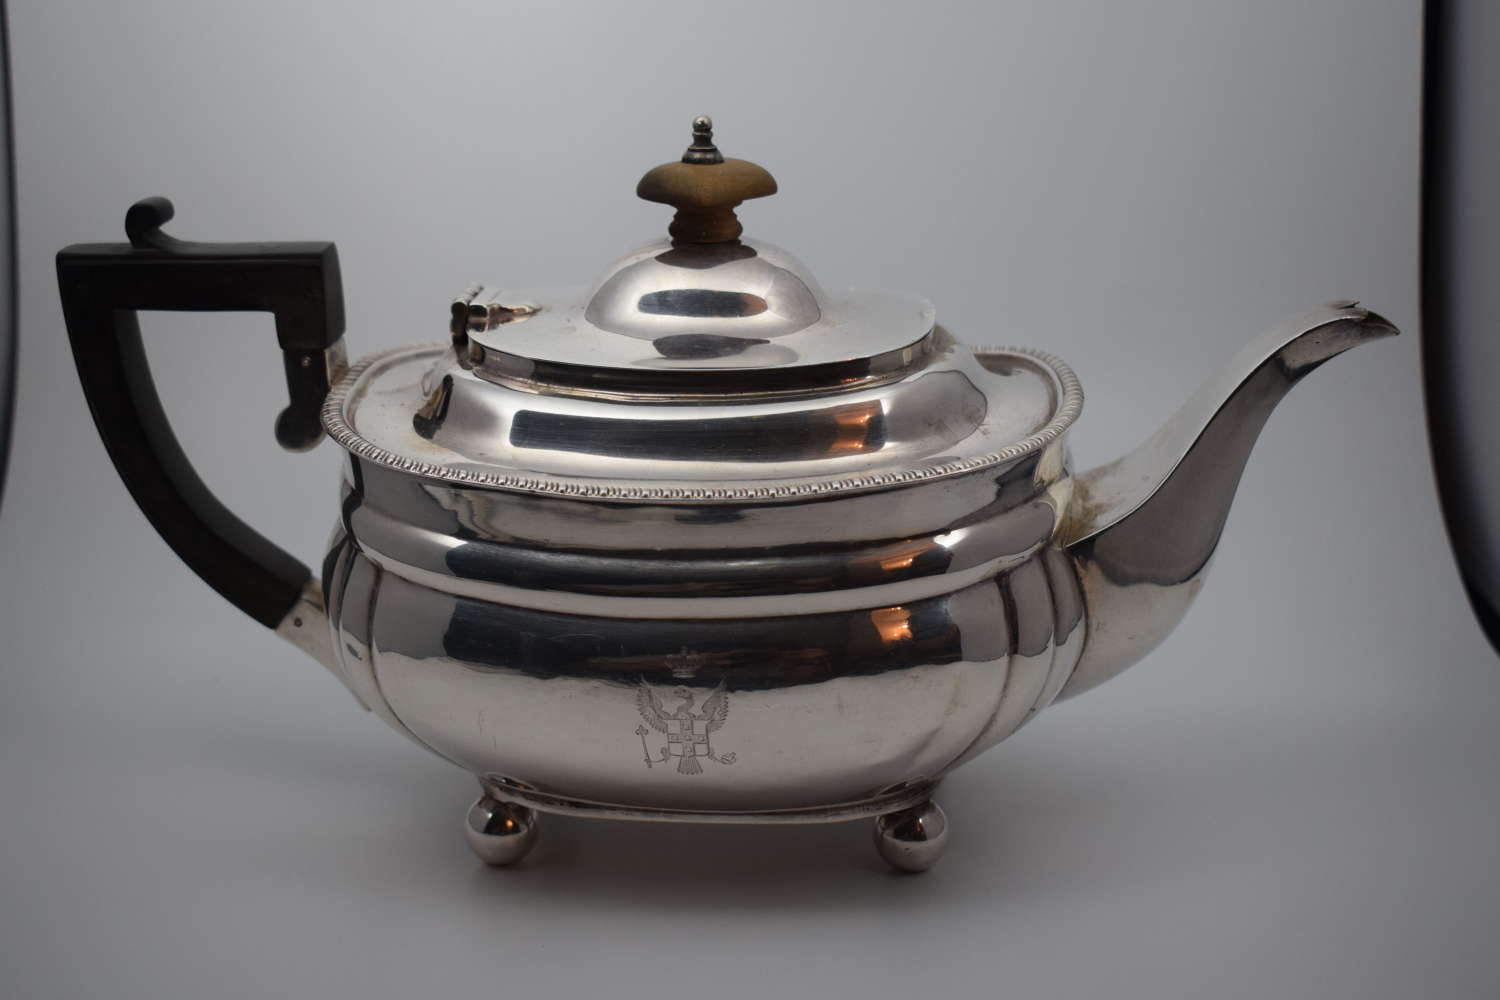 A Silver Bachelors Teapot